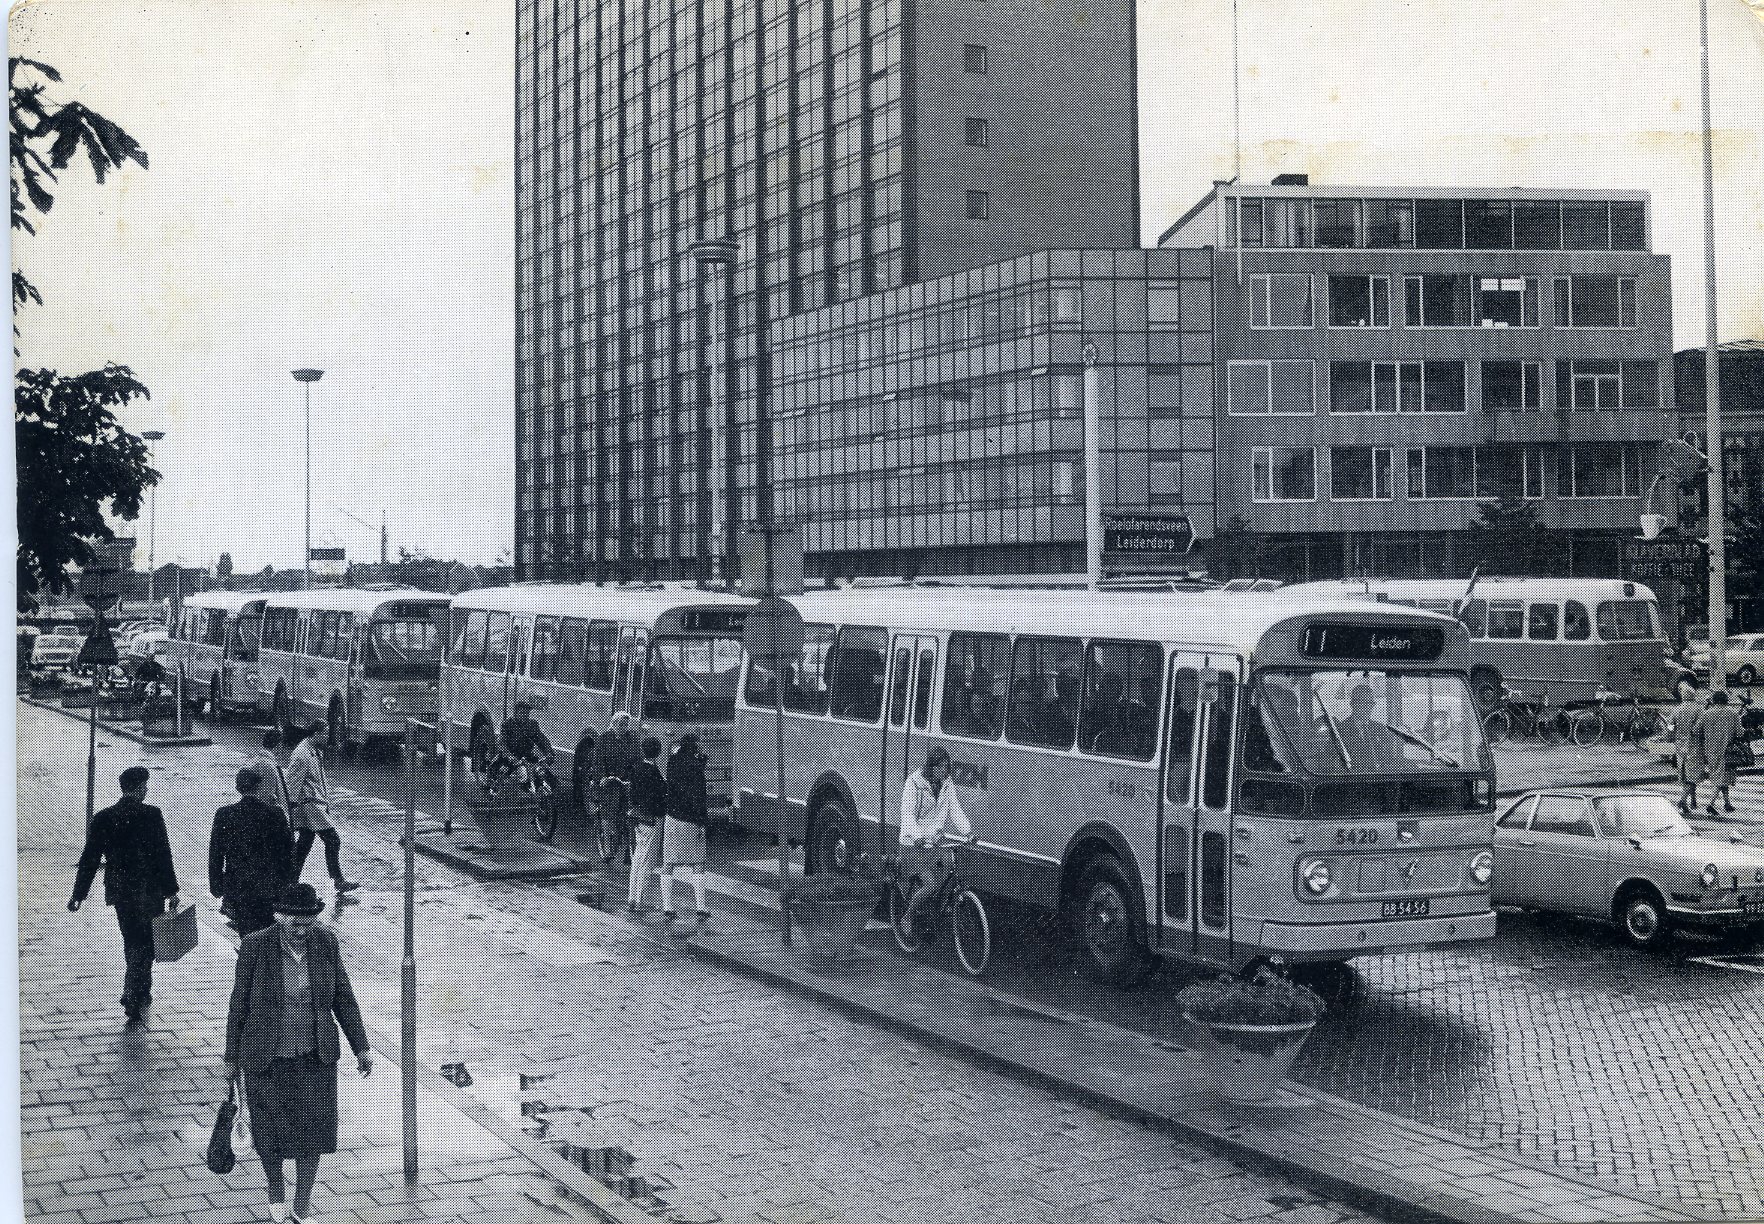 Het streekvervoer wordt geel: intocht van nieuwe bussen in Leiden in 1968 (reclame-ansichtkaart van de NZH).